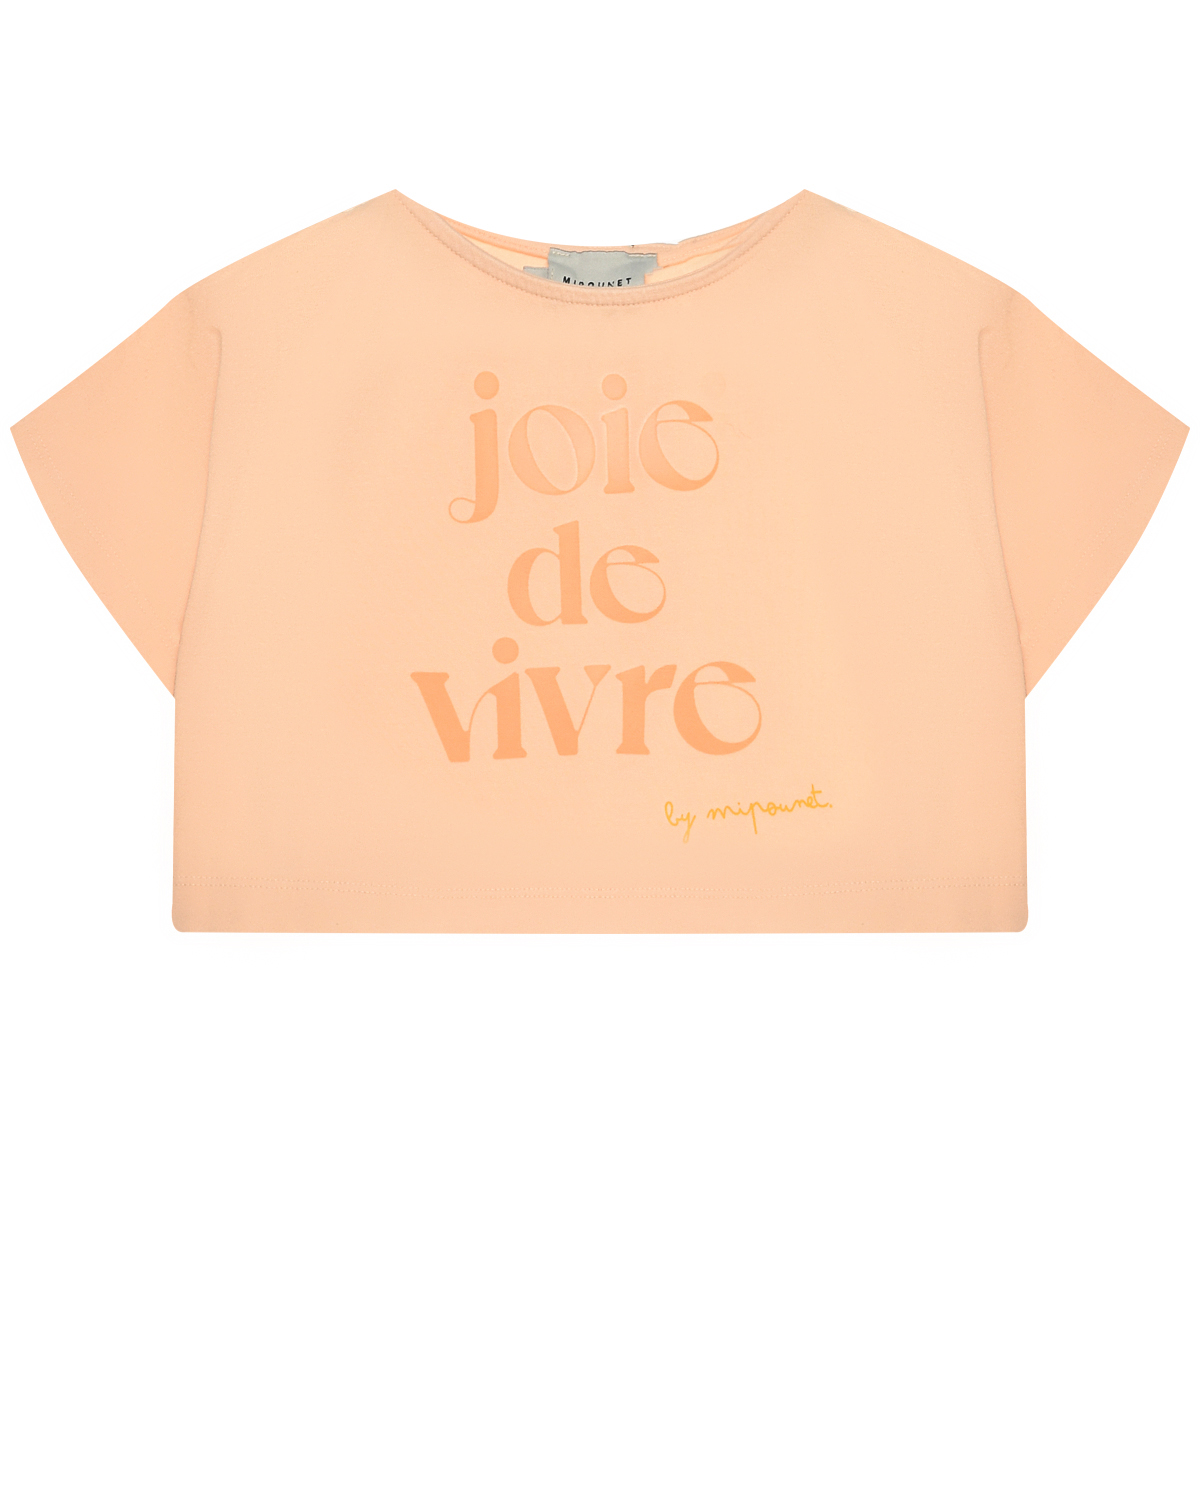 Укороченная футболка с притом "joie de vivre" Mipounet, размер 128, цвет нет цвета - фото 1